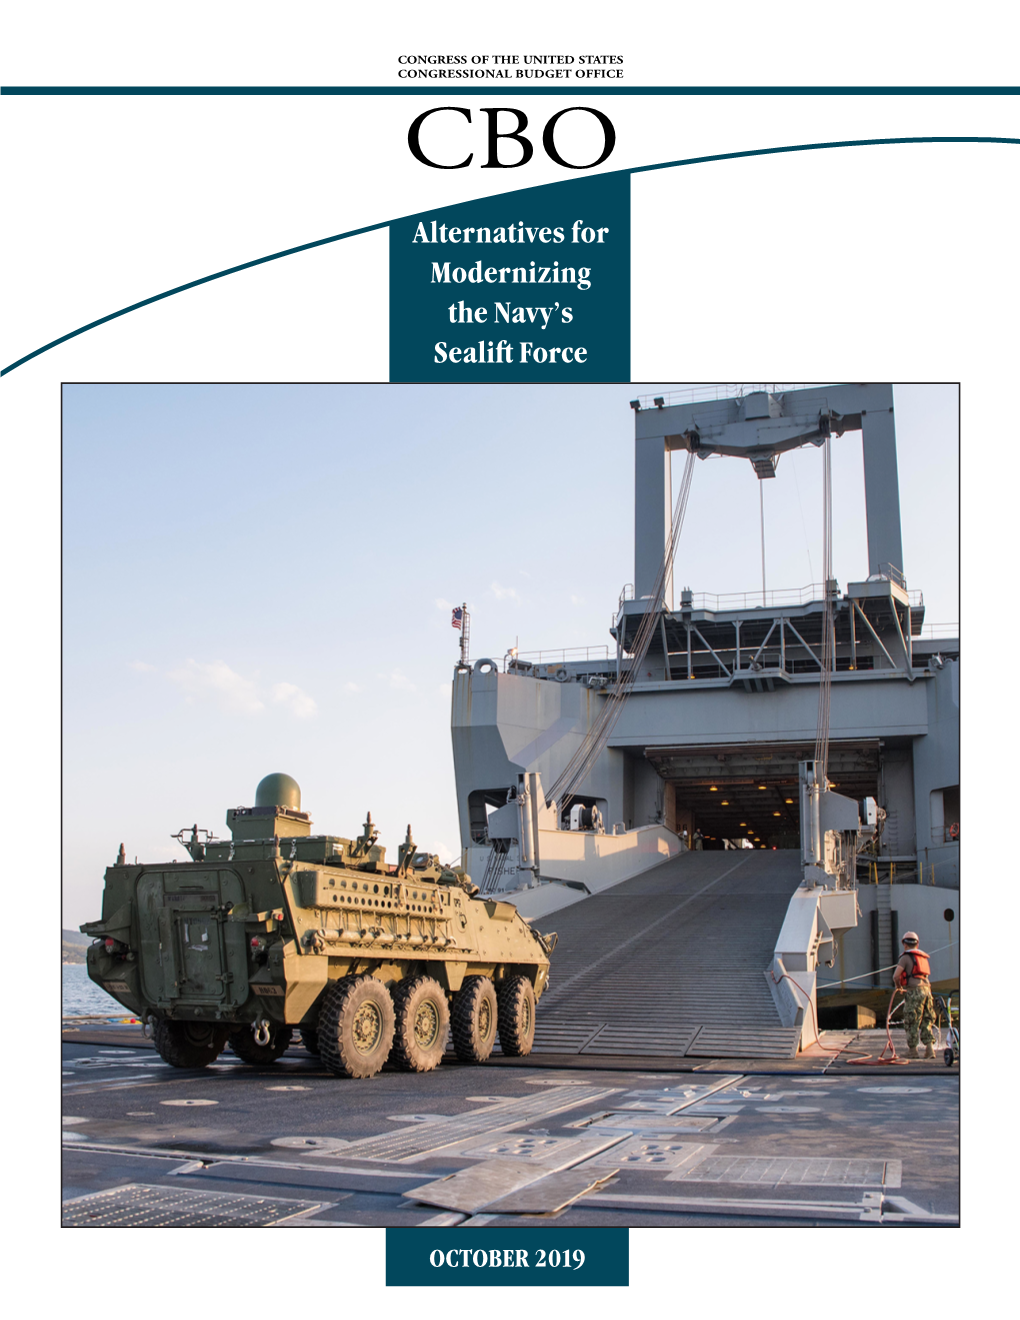 Alternatives for Modernizing the Navy's Sealift Force, October 2019